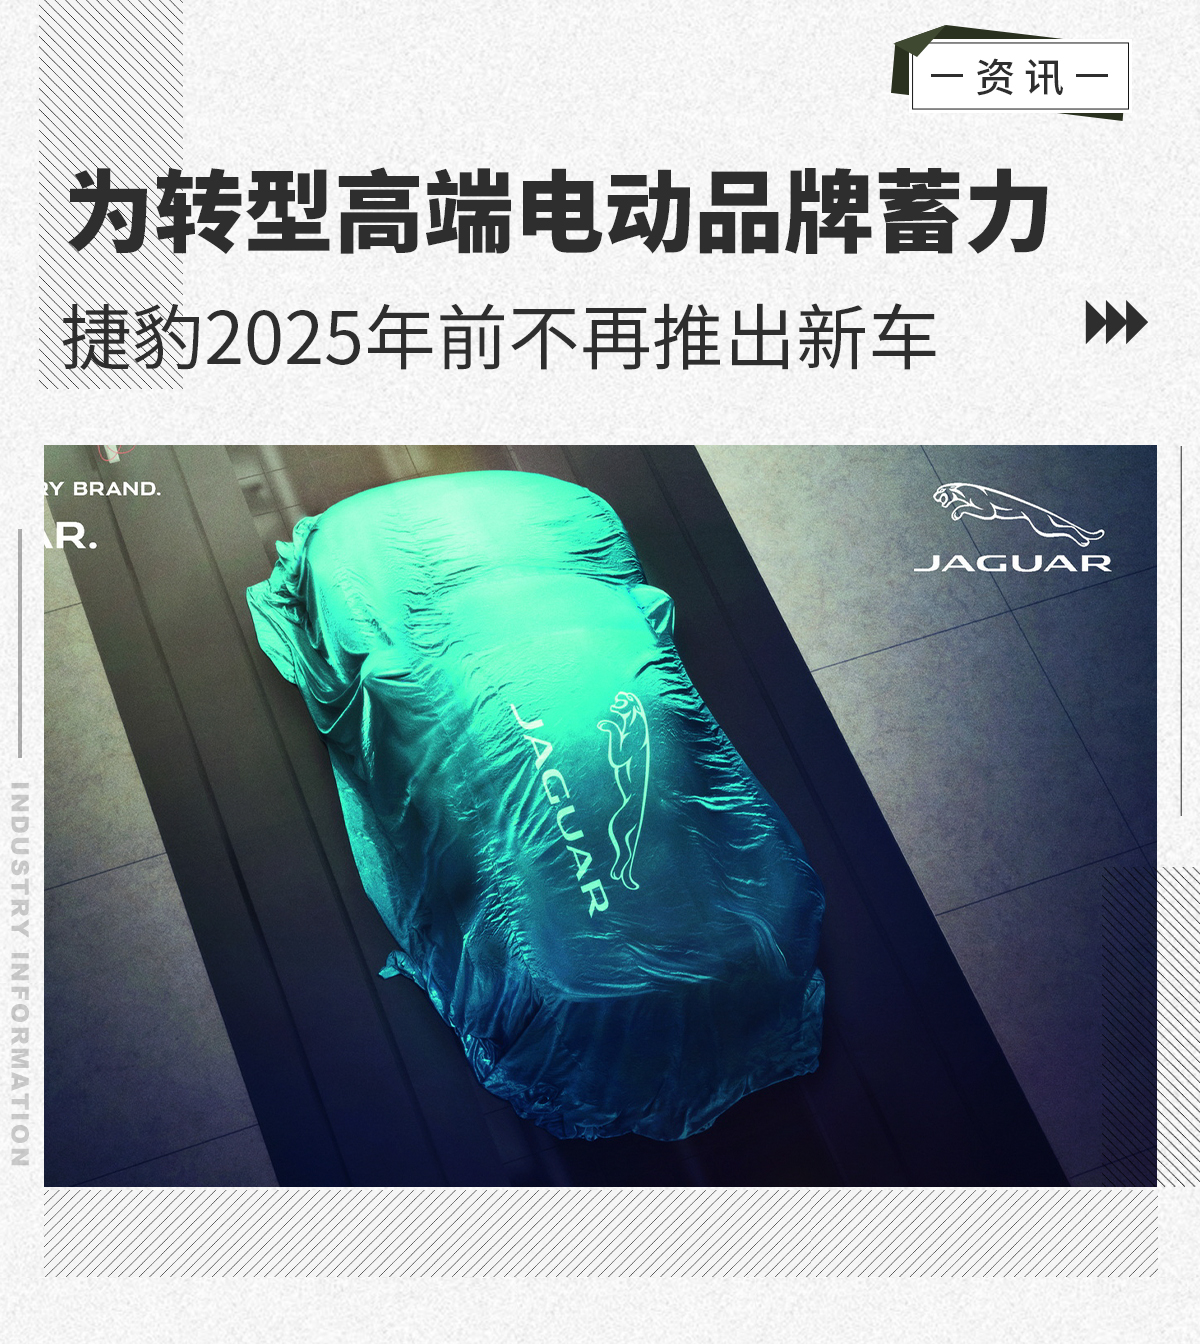 捷豹2025年前不再推出新车 为进入高端市场蓄力